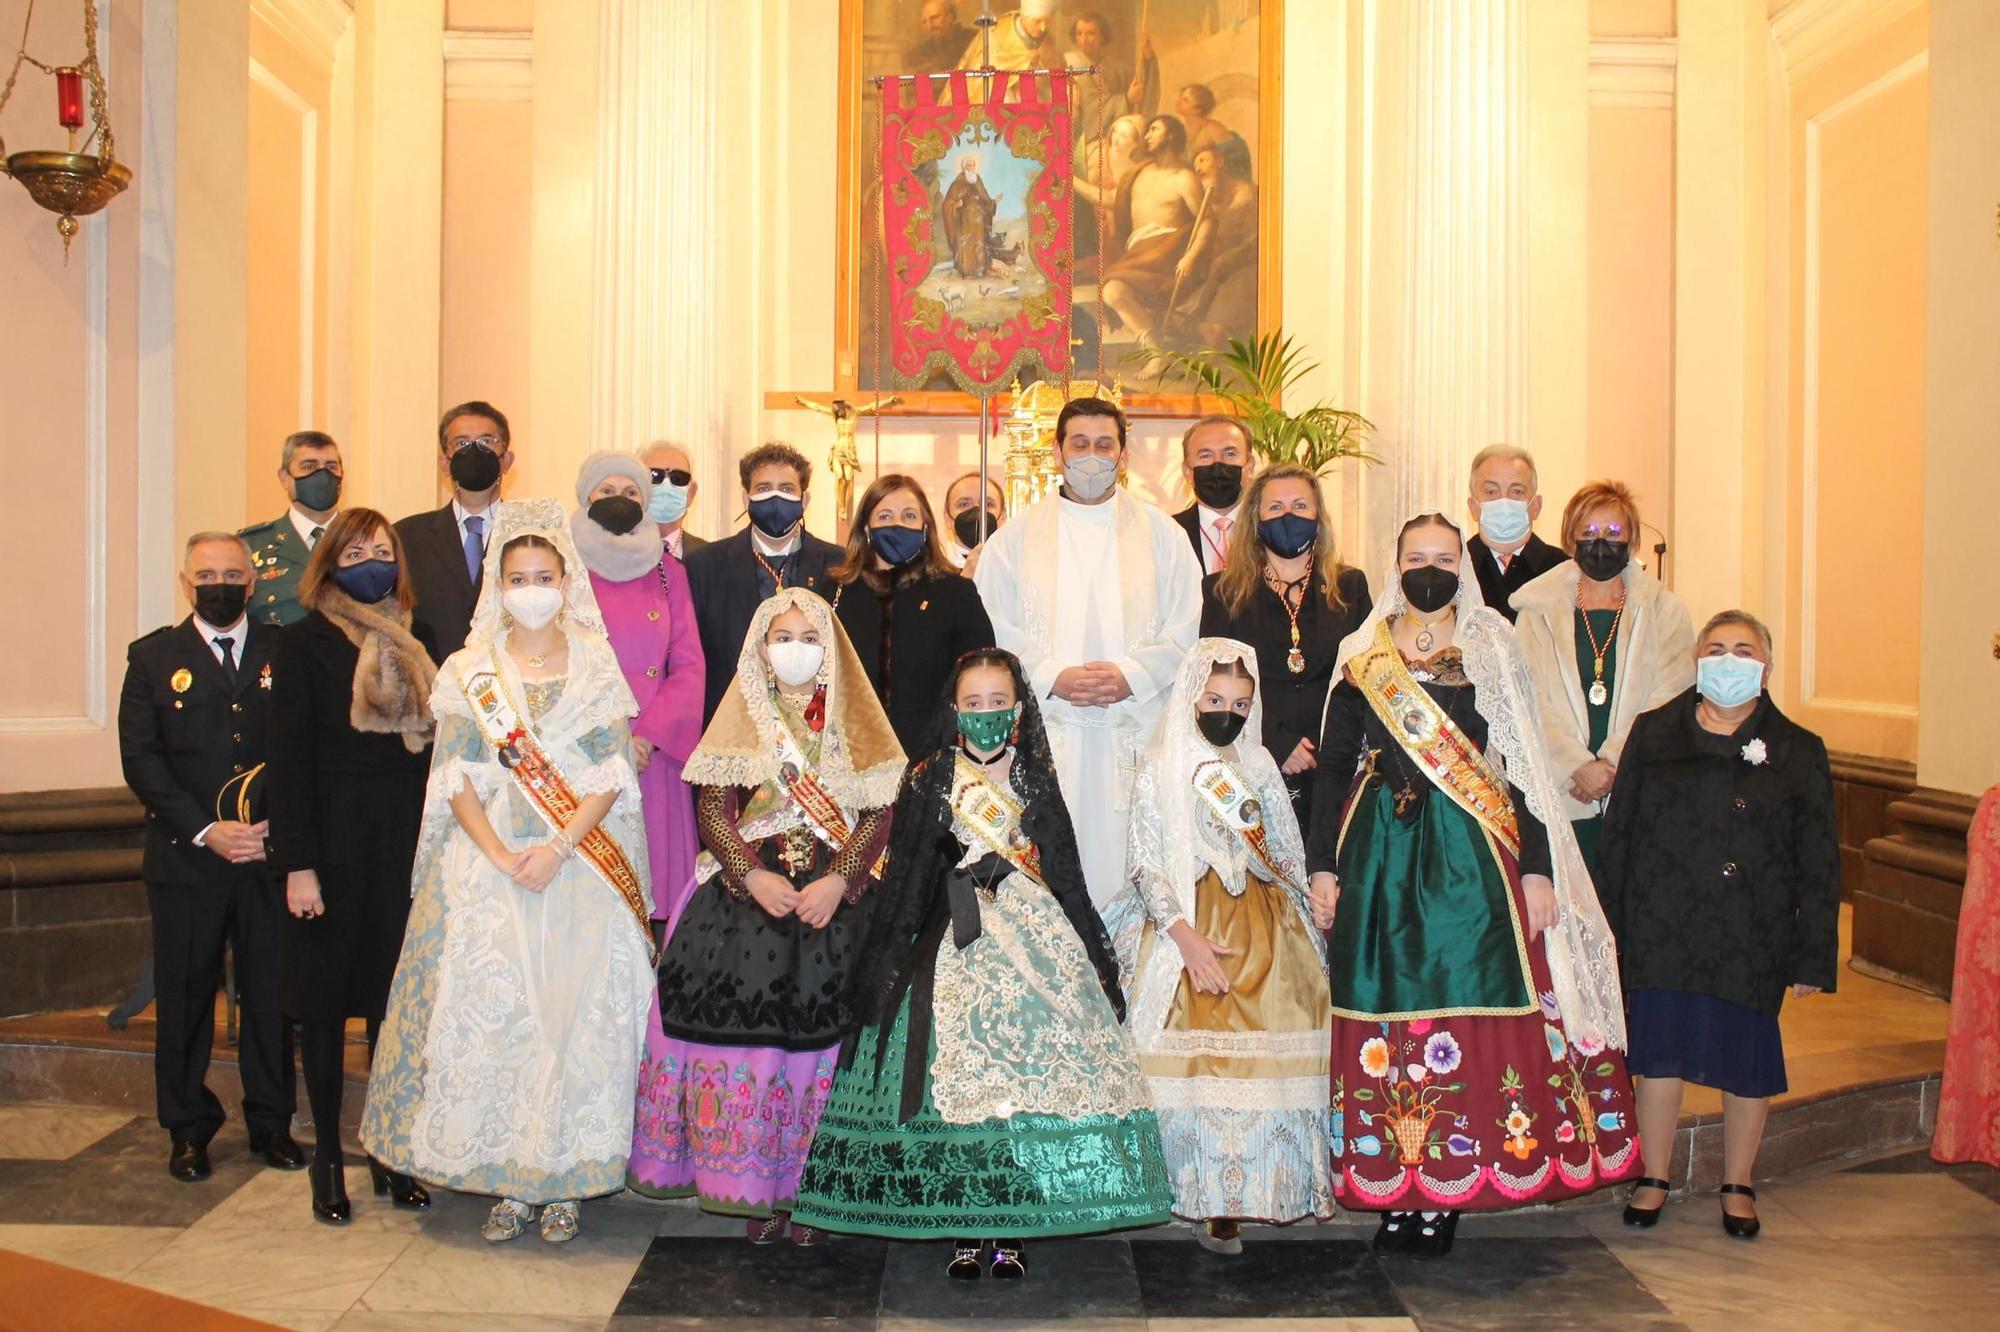 Las mejores fotos de la ofrenda y la procesión a Sant Antoni y Santa Àgueda en Benicàssim